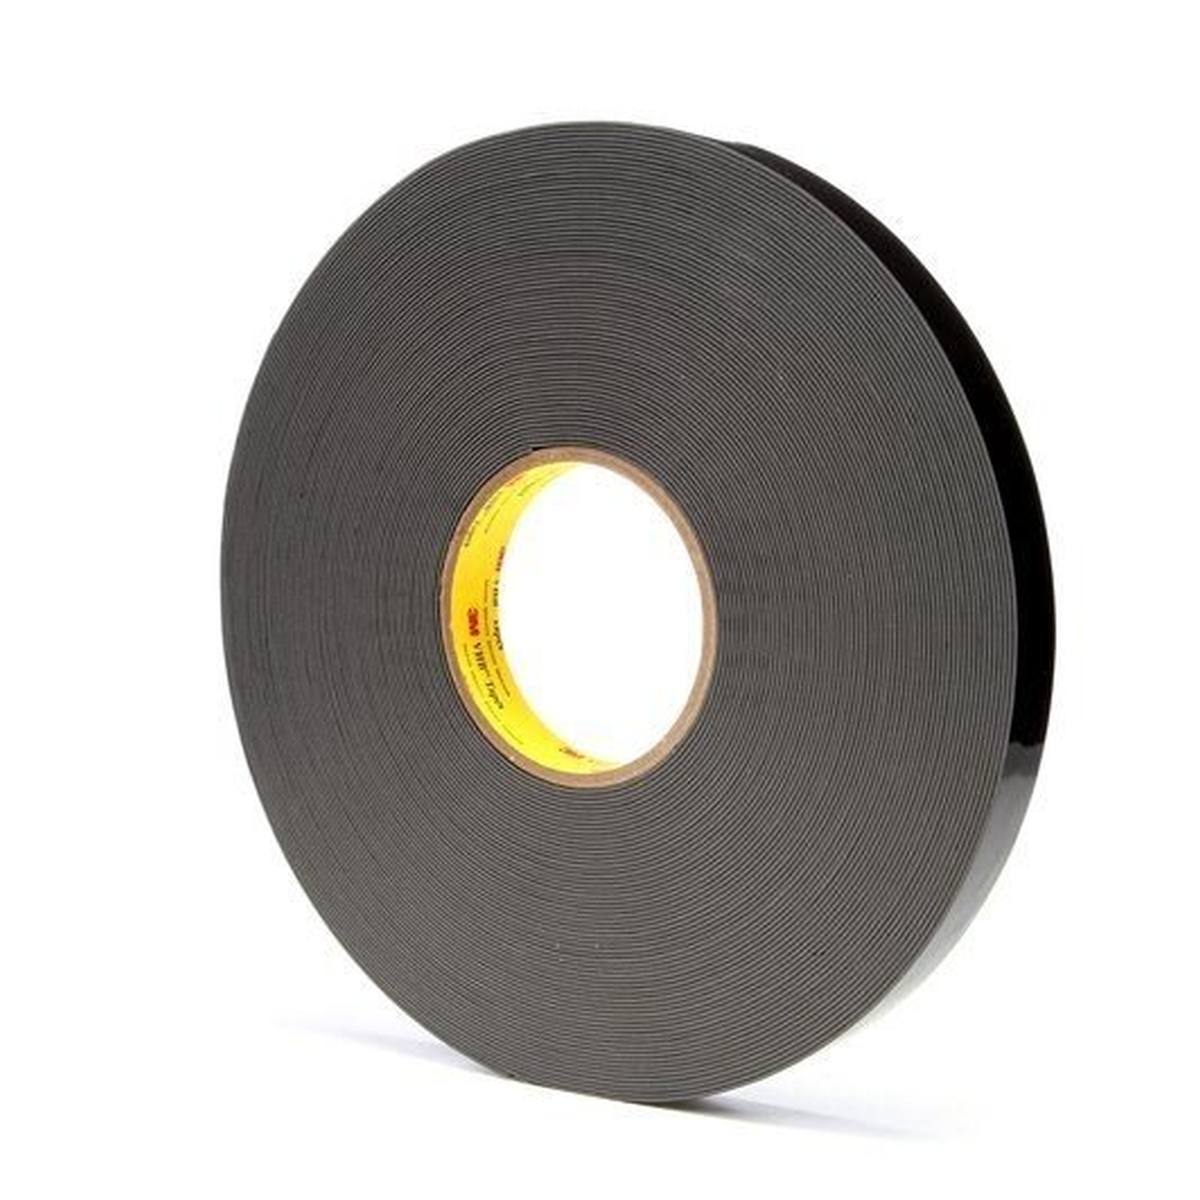 3M VHB adhesive tape 4929F, black, 19 mm x 33 m, 0.6 mm